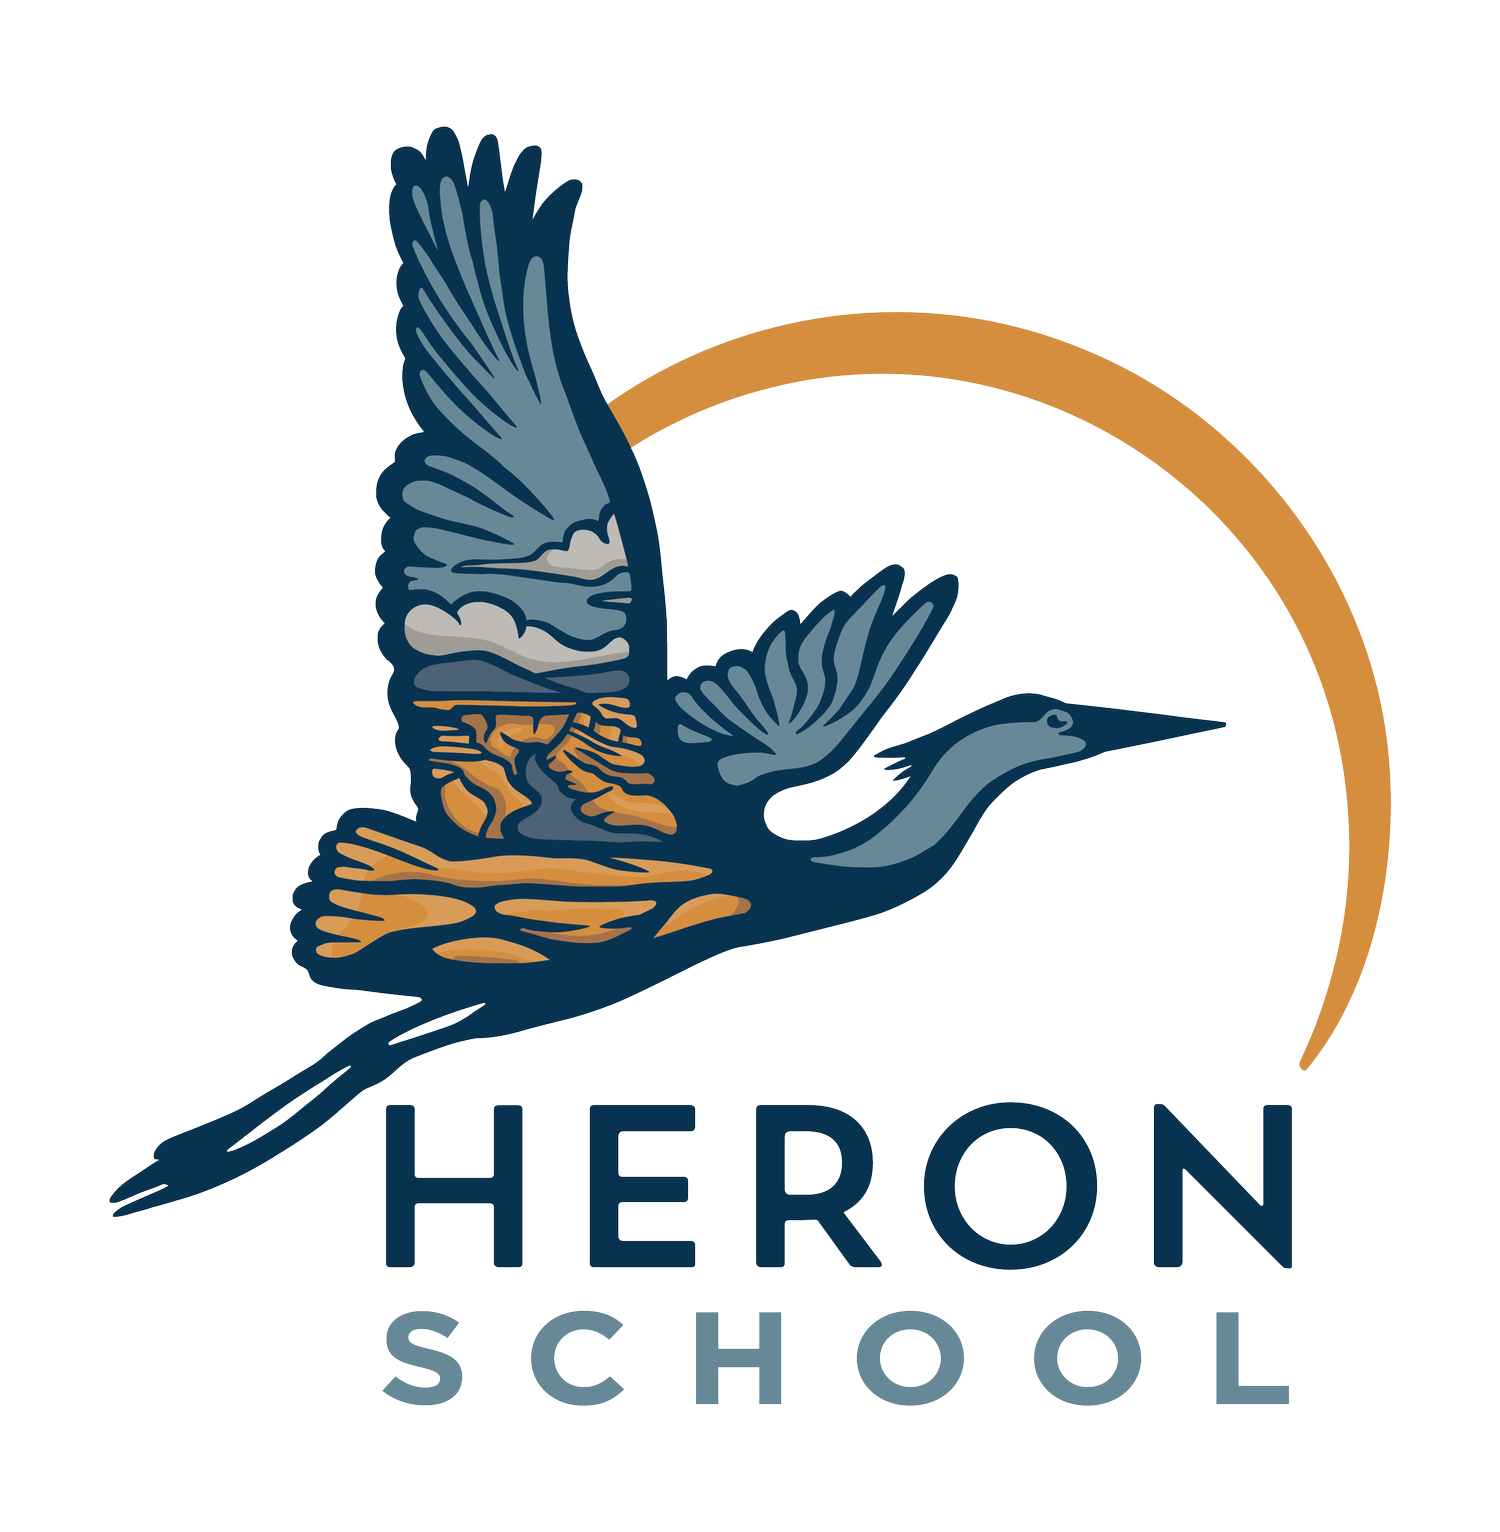 HERON SCHOOL